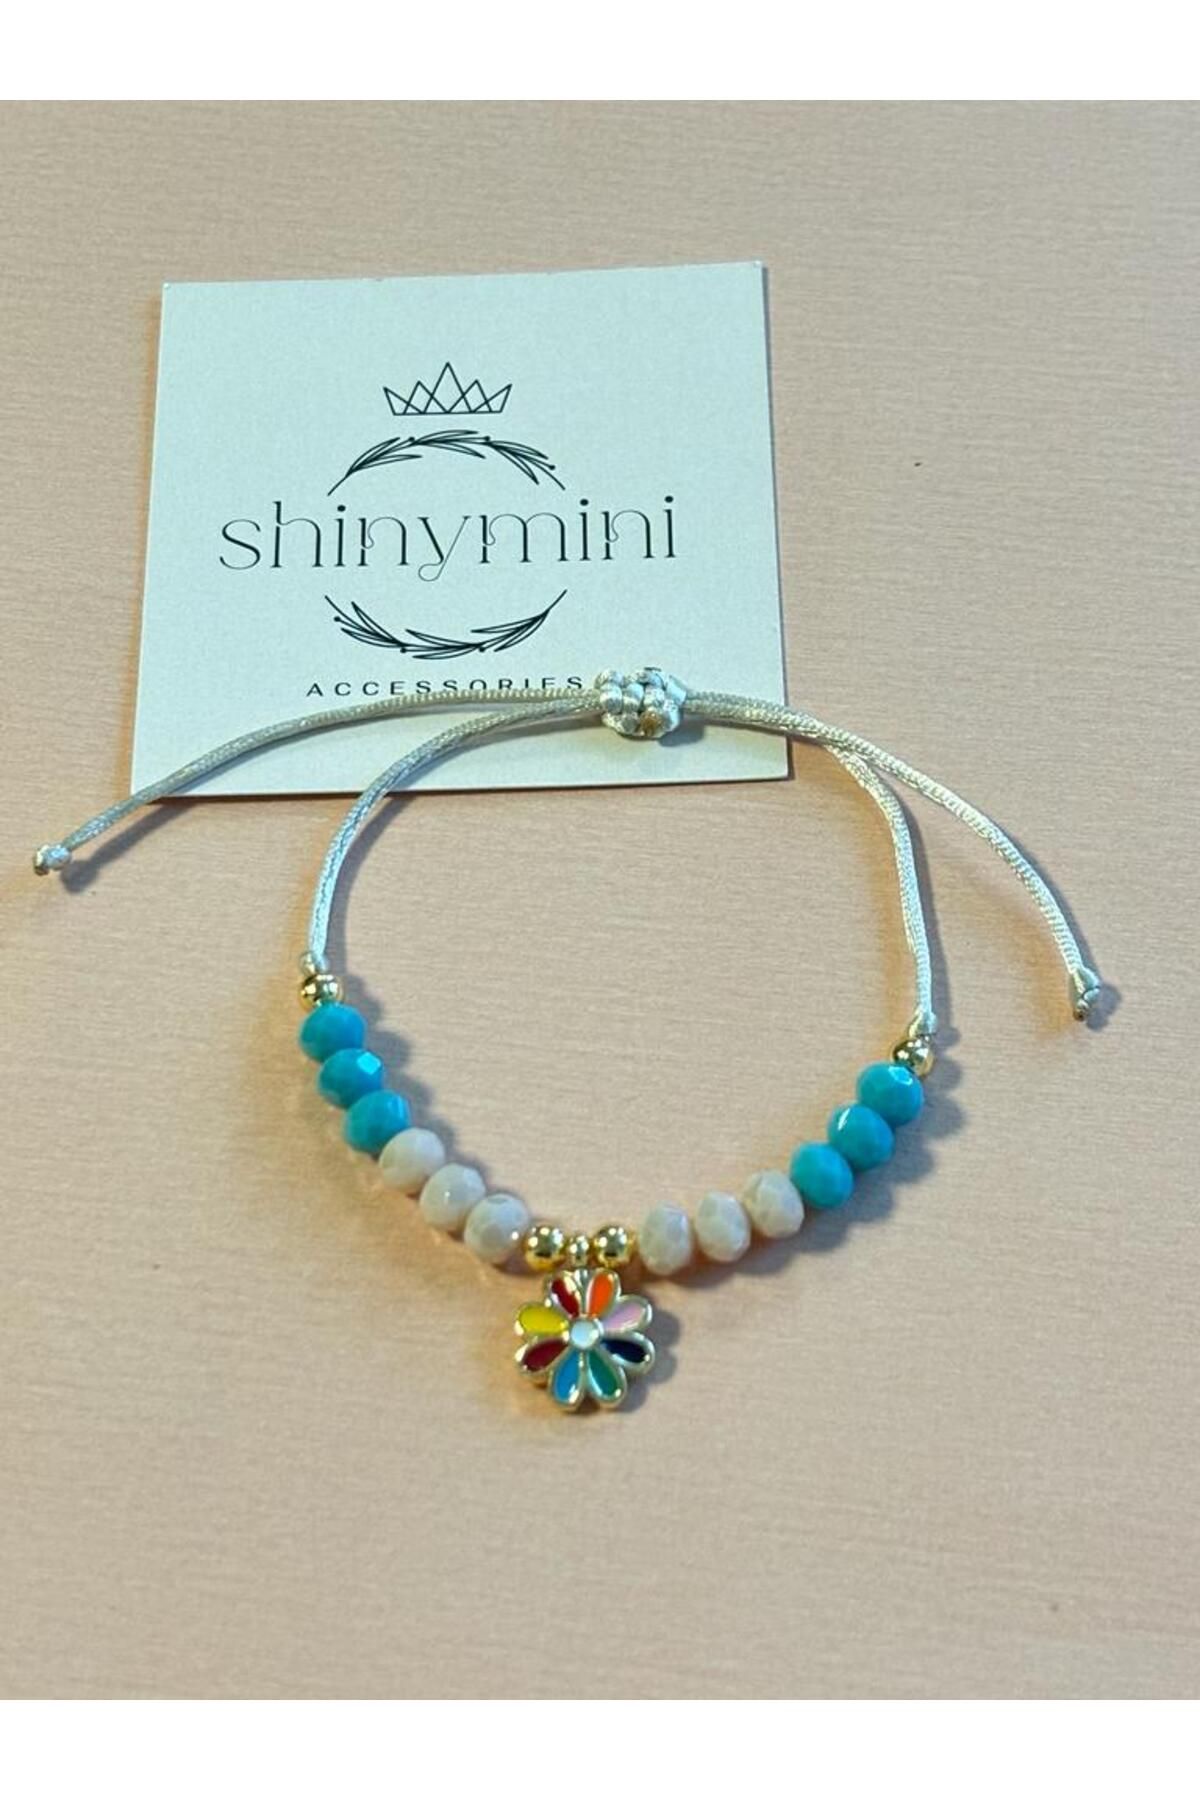 shinymini accessories Özel Tasarım Kız Çocuk Renkli Çiçek Detaylı Ayarlanabilir İpli Bileklik